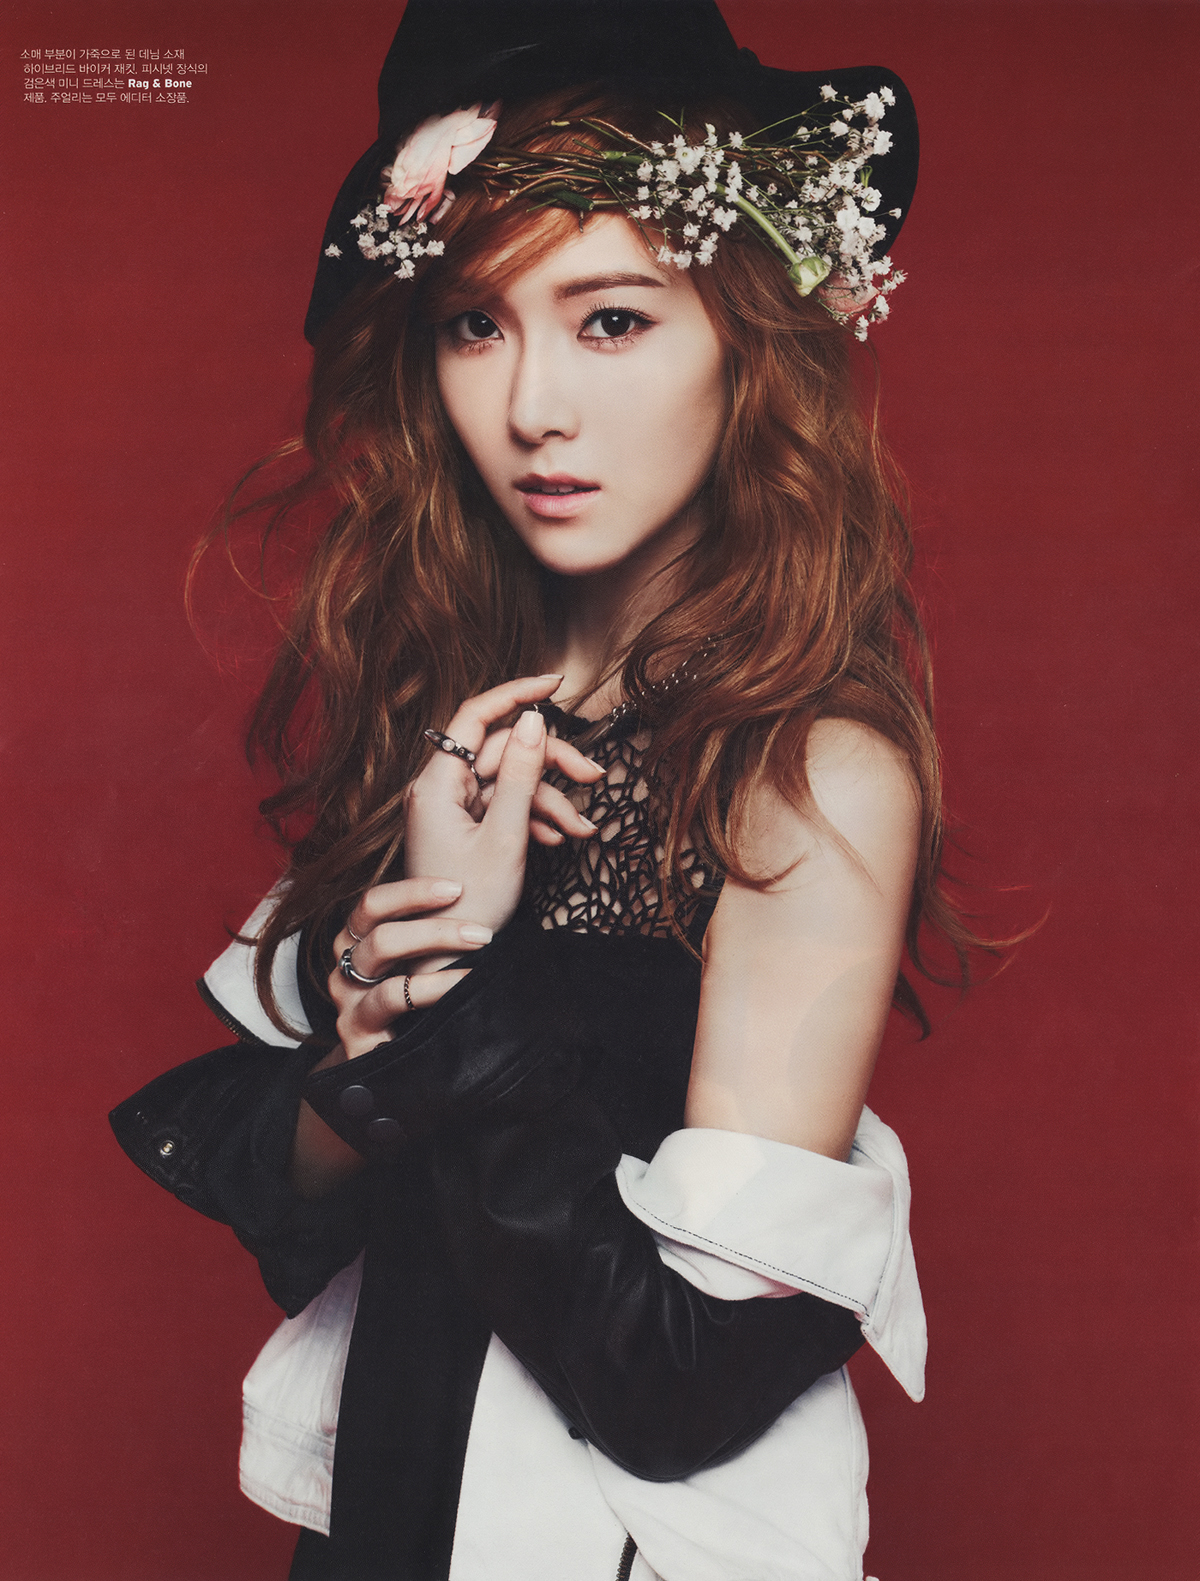 [PIC][20-03-2013]Jessica xuất hiện trên ấn phẩm tháng 4 của tạp chí "W Korea" 020BC03C5149C2D8158379